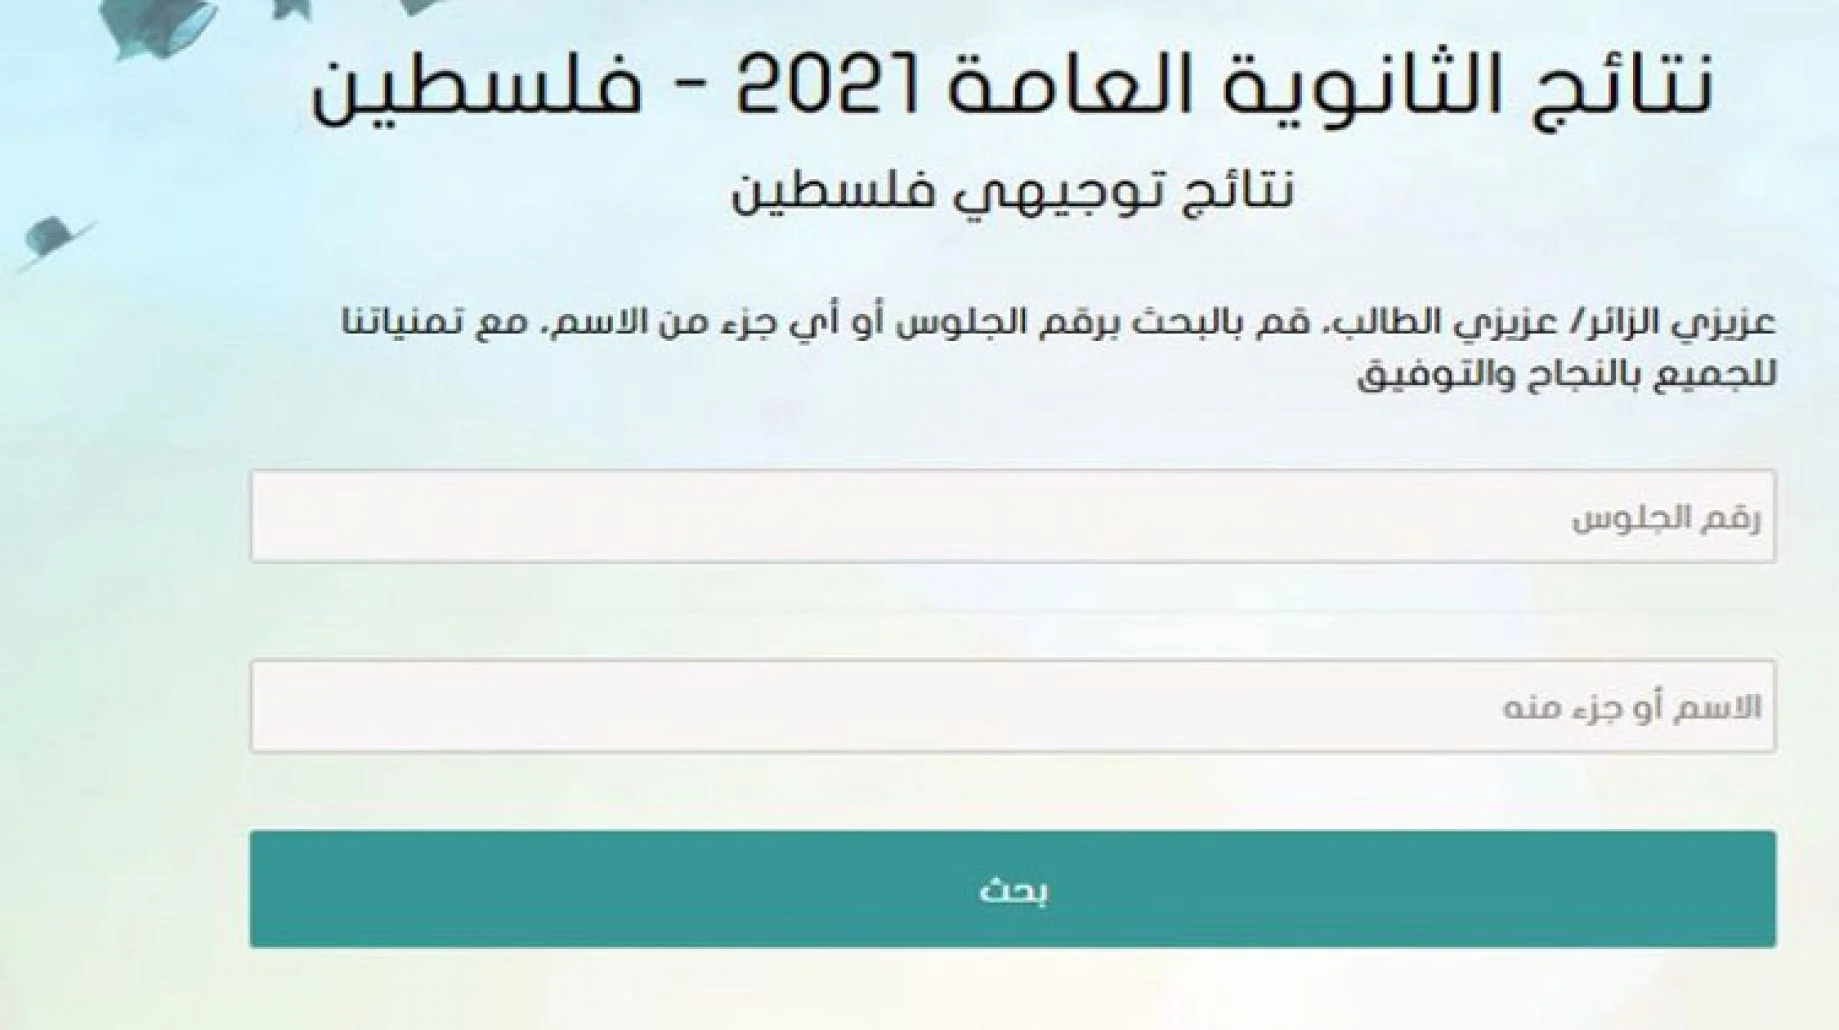 لينك نتائج التوجيهي 2022 فلسطين.webp.webp - مدونة التقنية العربية